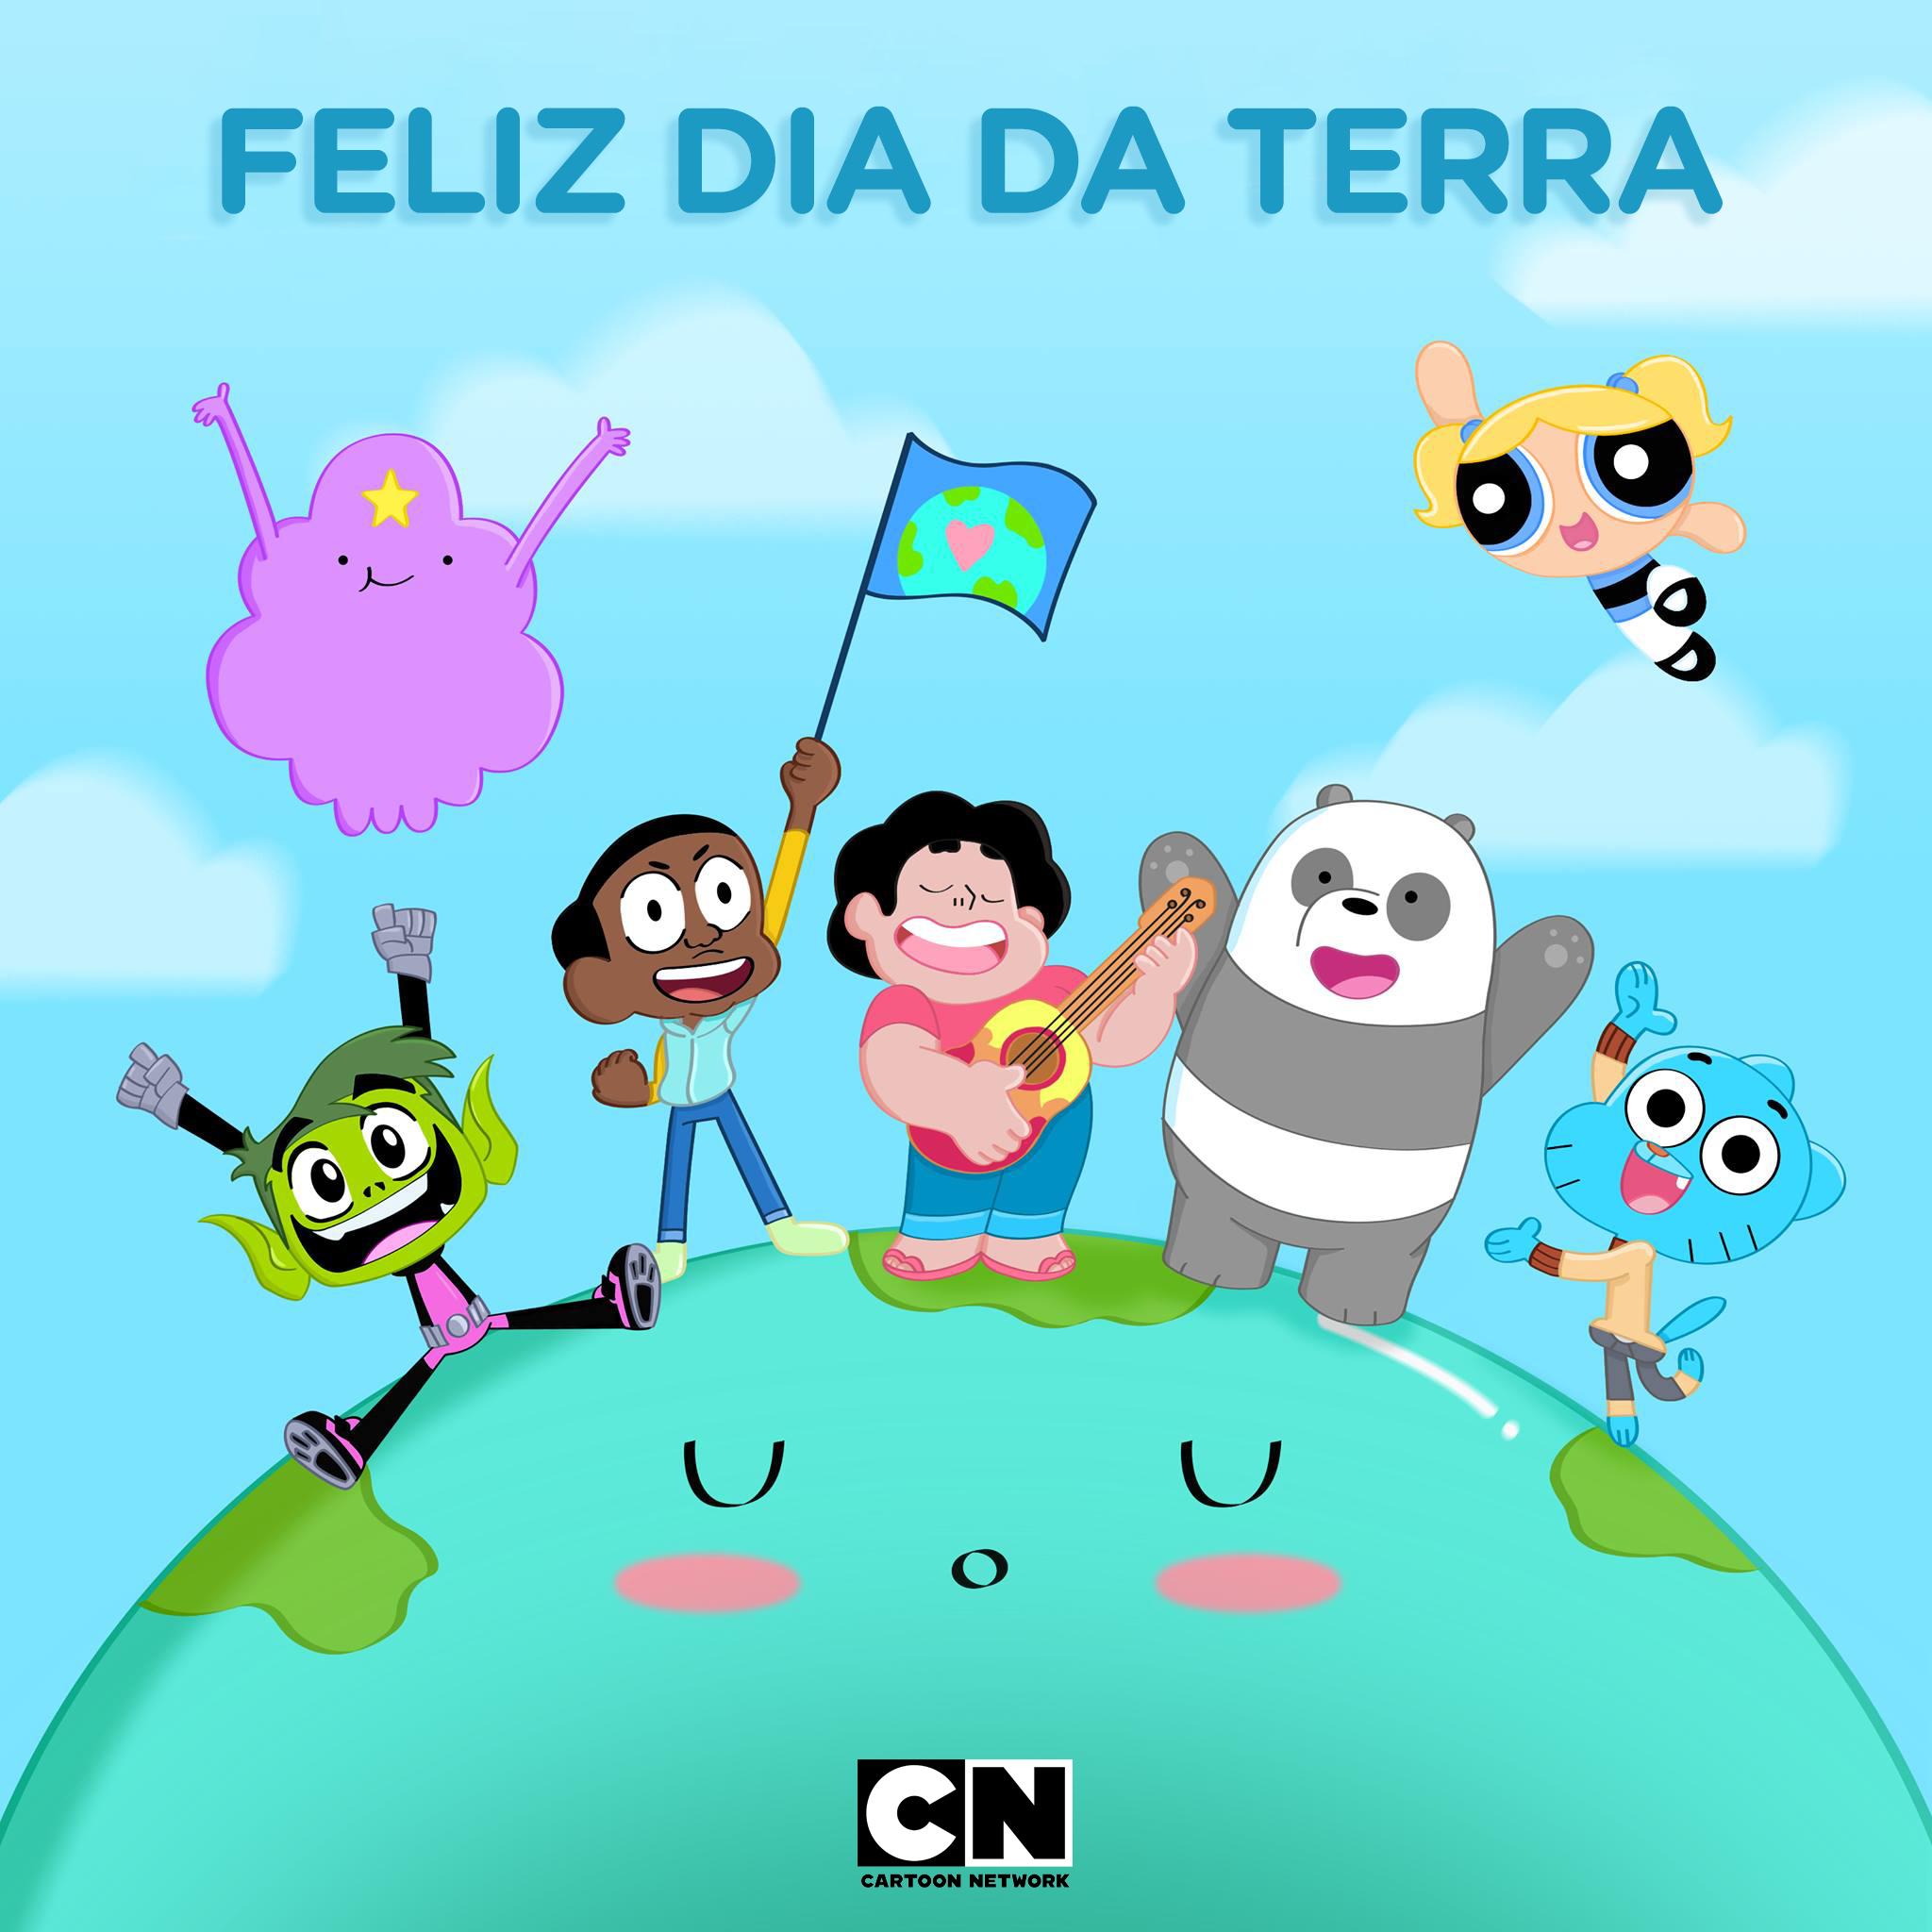 Cartoon Network Brasil on X: 🚨 Atenção 🚨 Amanhã vai rolar uma